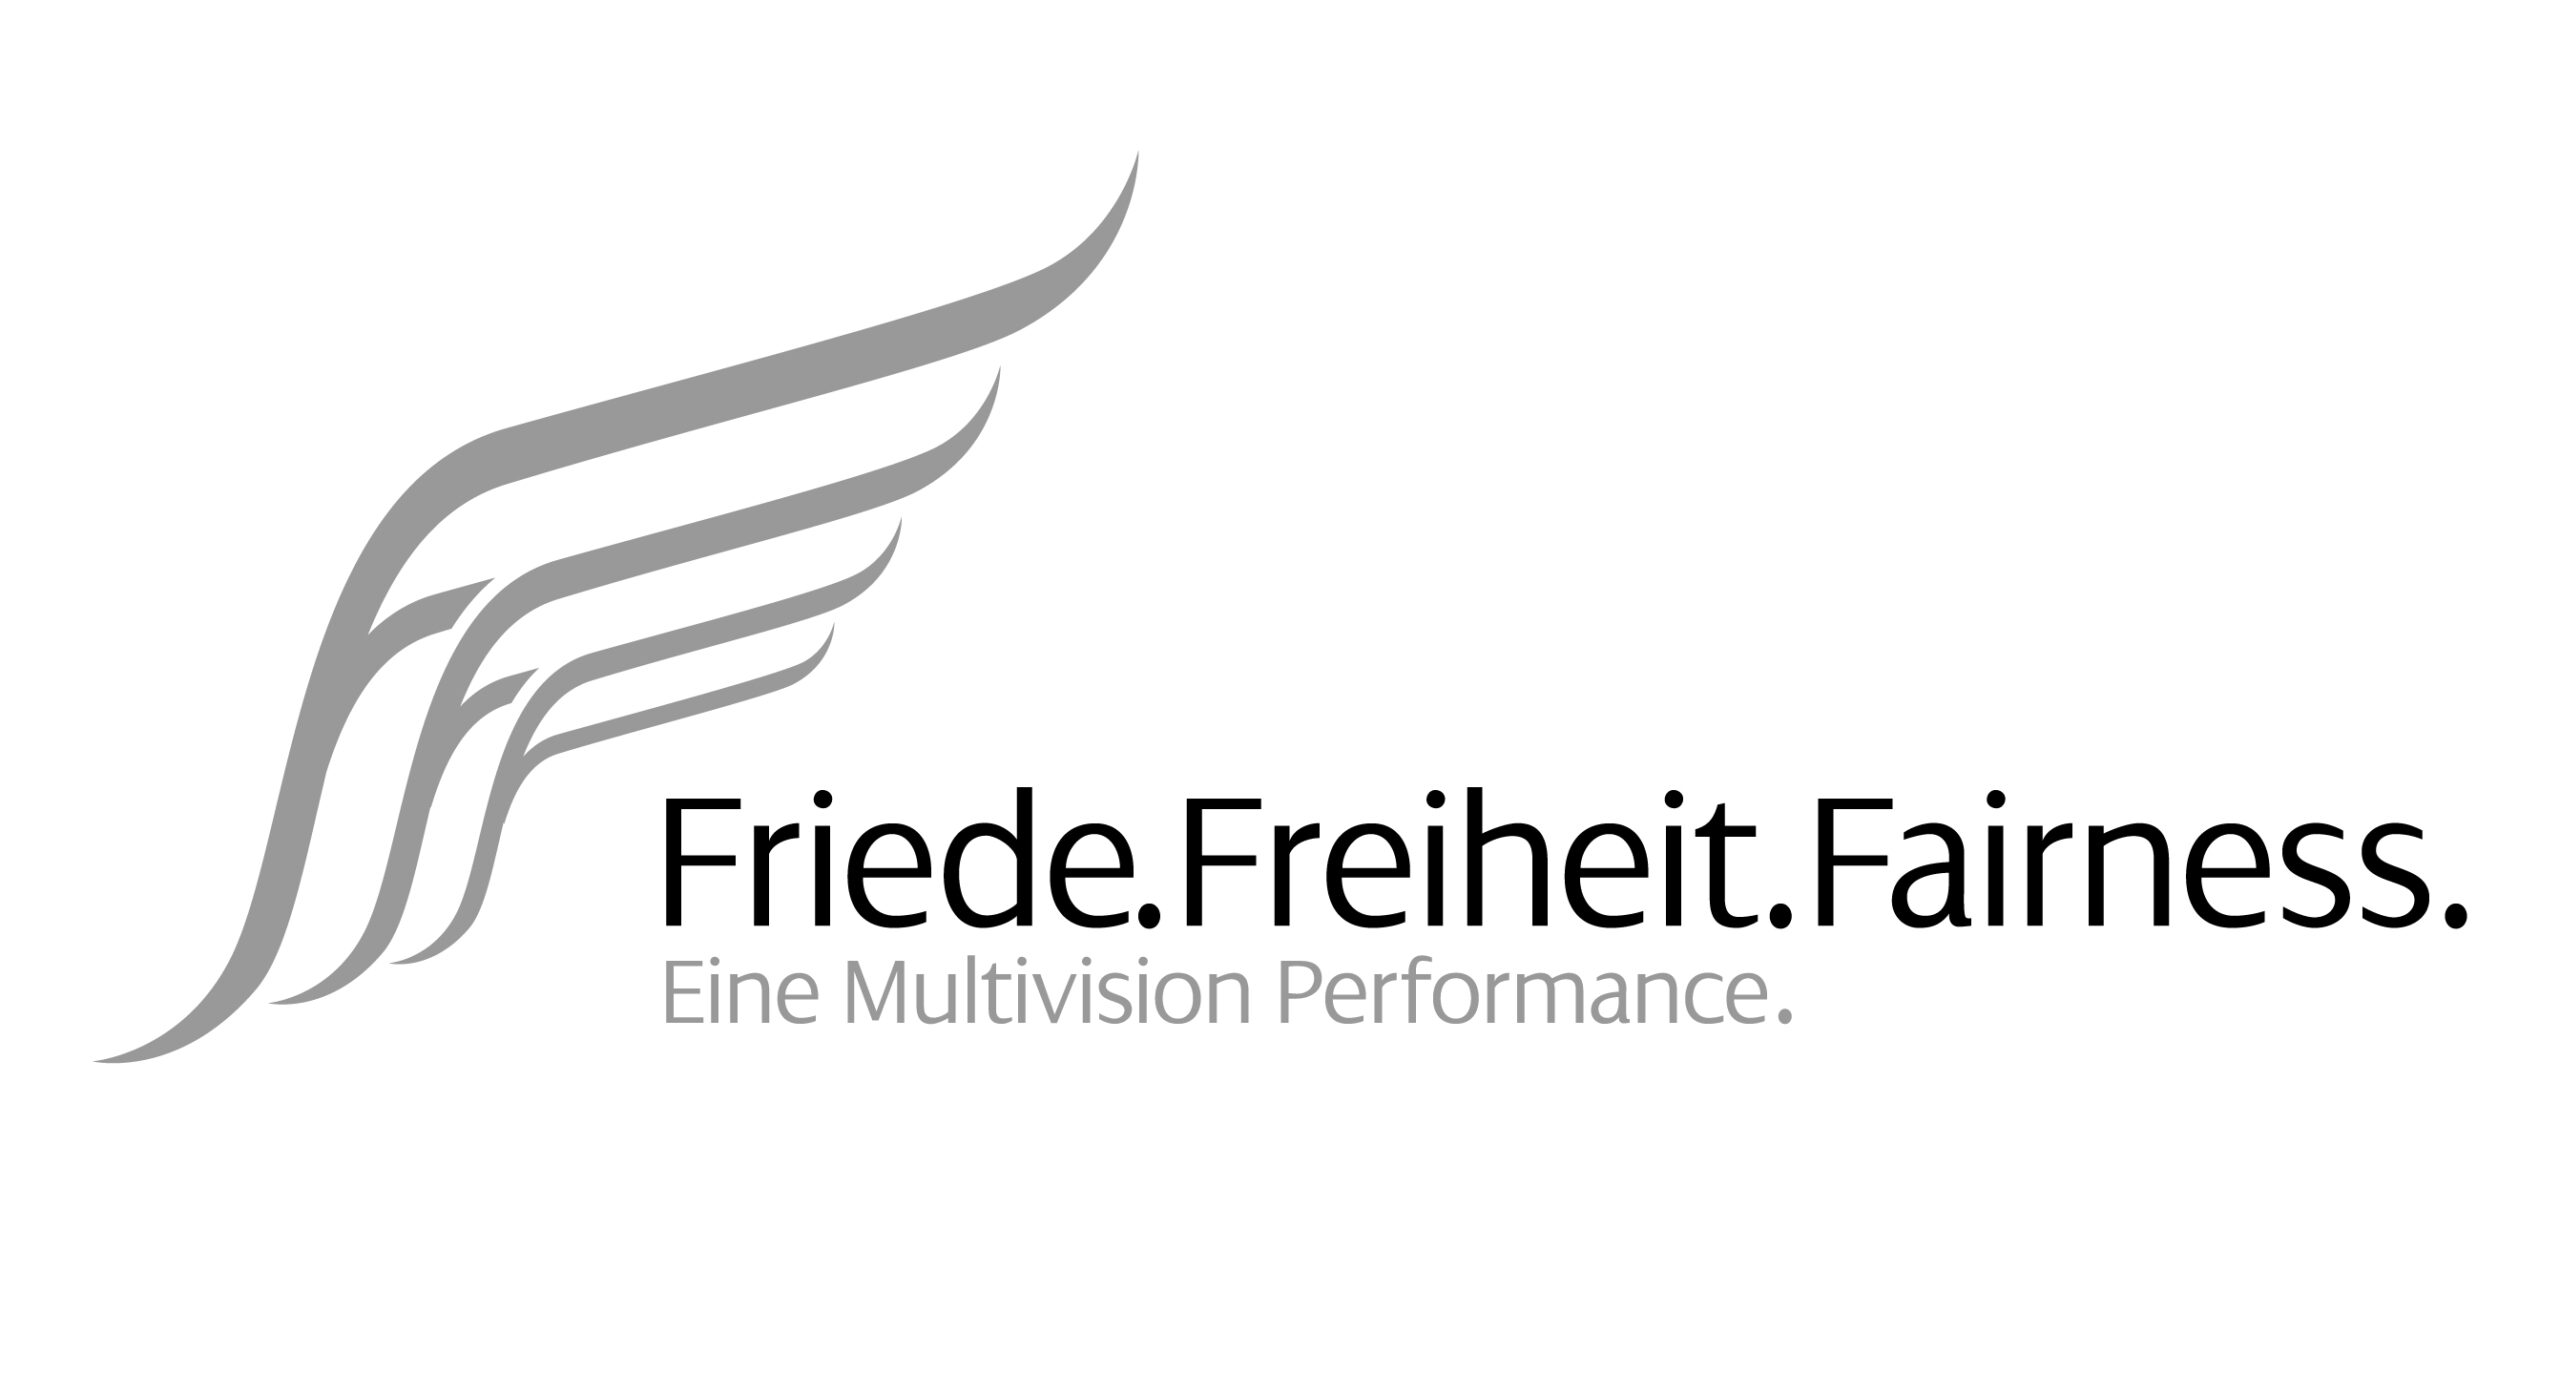 Bundespräsident Heinz Fischer zu "Friede.Freiheit.Fairness"